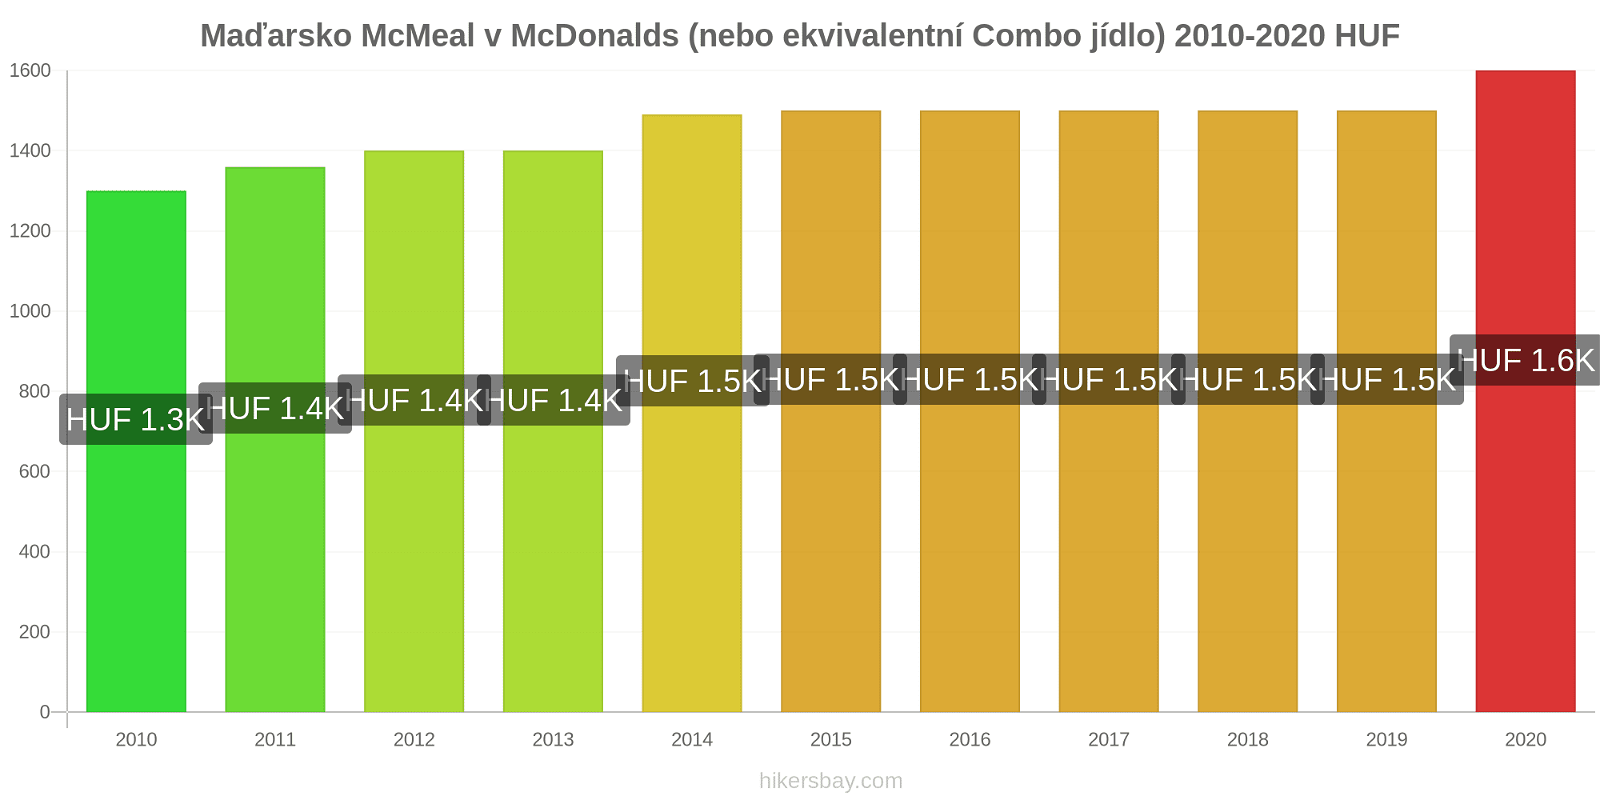 Maďarsko změny cen McMeal v McDonalds (nebo ekvivalentní Combo jídlo) hikersbay.com